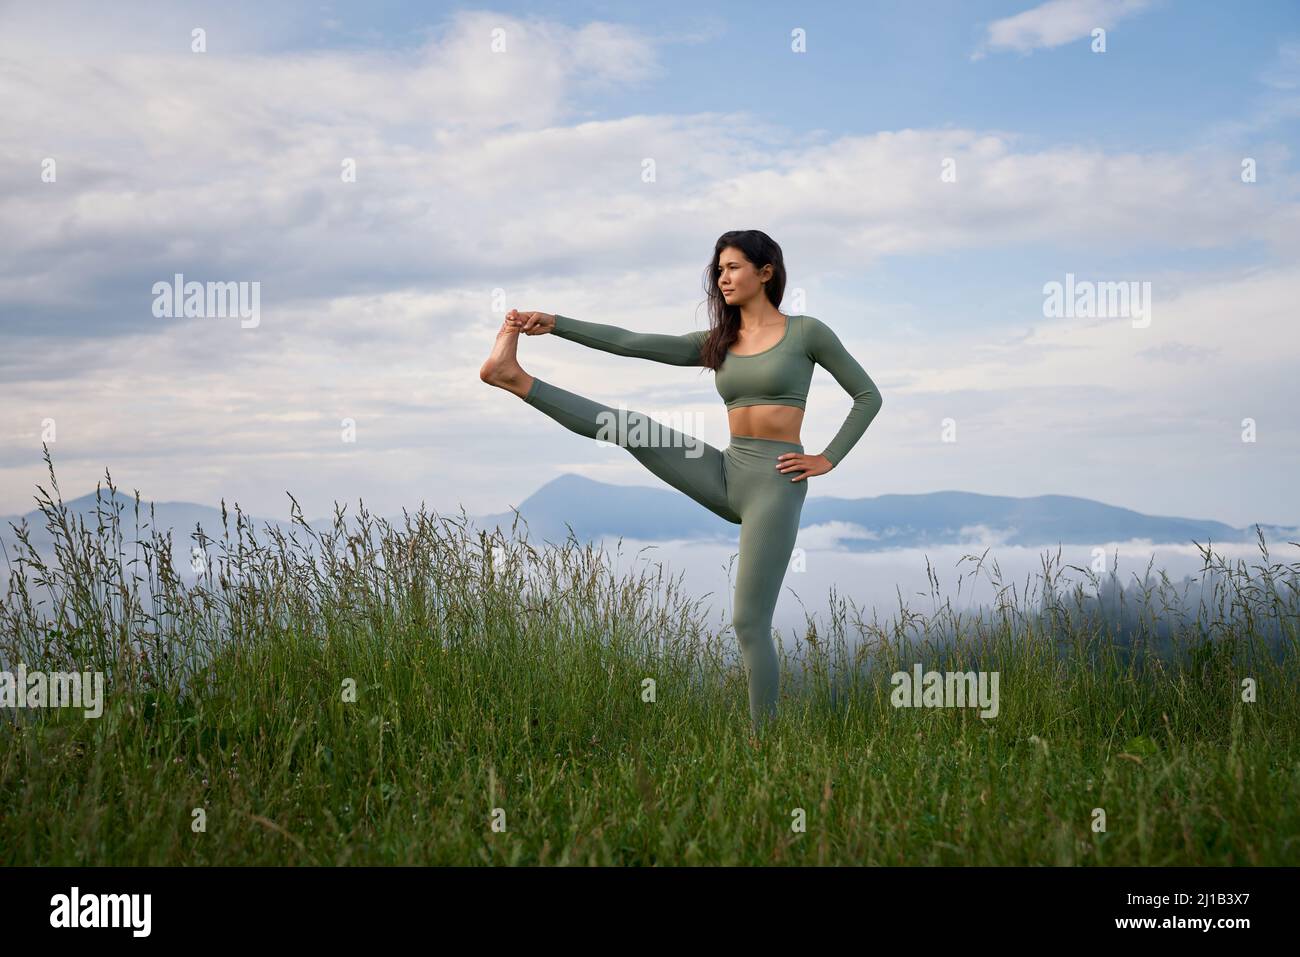 Junge sportliche Frau mit aktivem Outfit, die im Stretching-Training in den Sommerbergen trainiert. Morgens Zeit für aktives Training. Gesunde Lebensweise Stockfoto